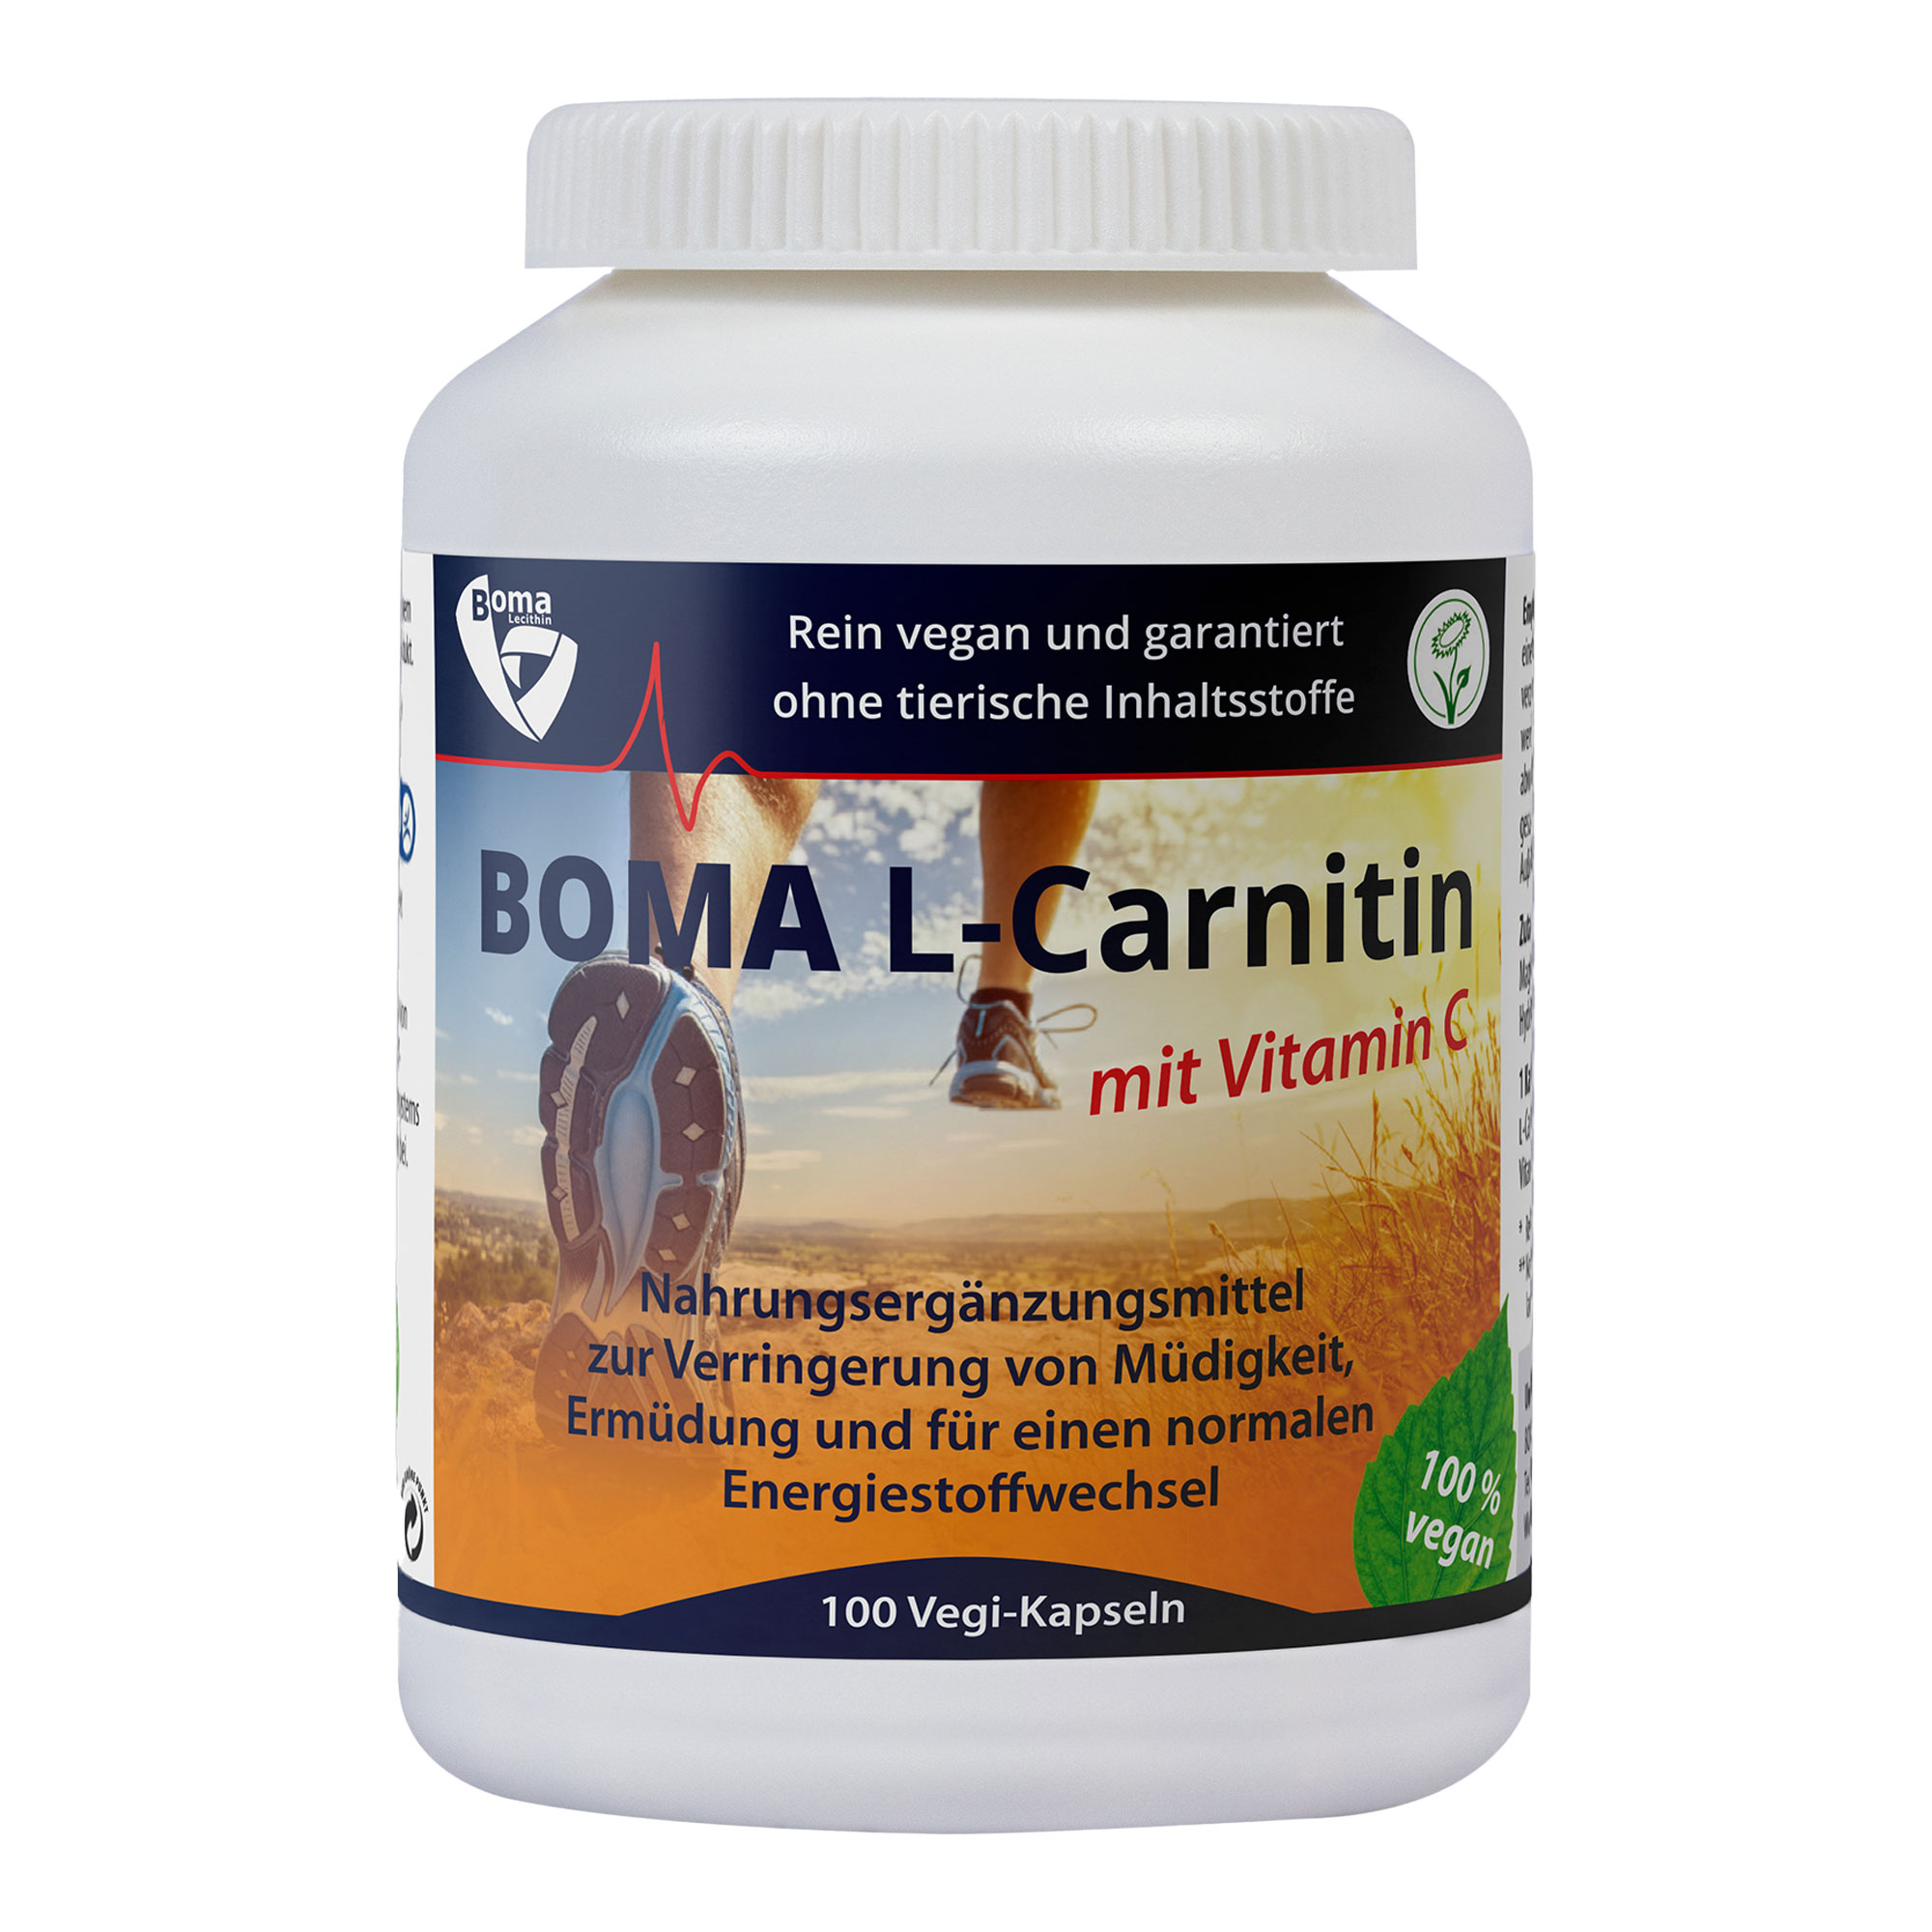 Nahrungsergänzungsmittel mit L-Cartinin und Vitamin C.